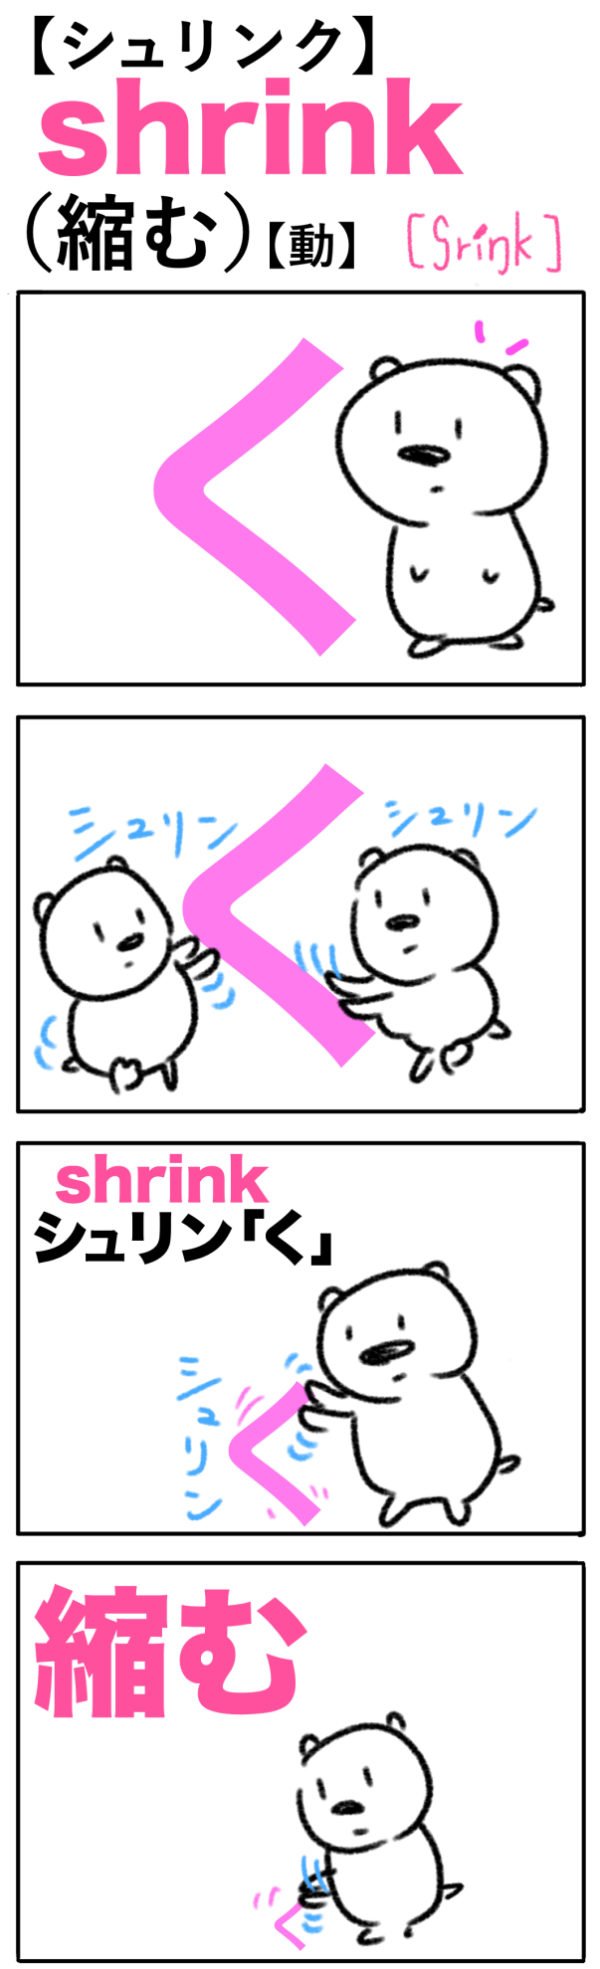 shrink（縮む）の語呂合わせ英単語